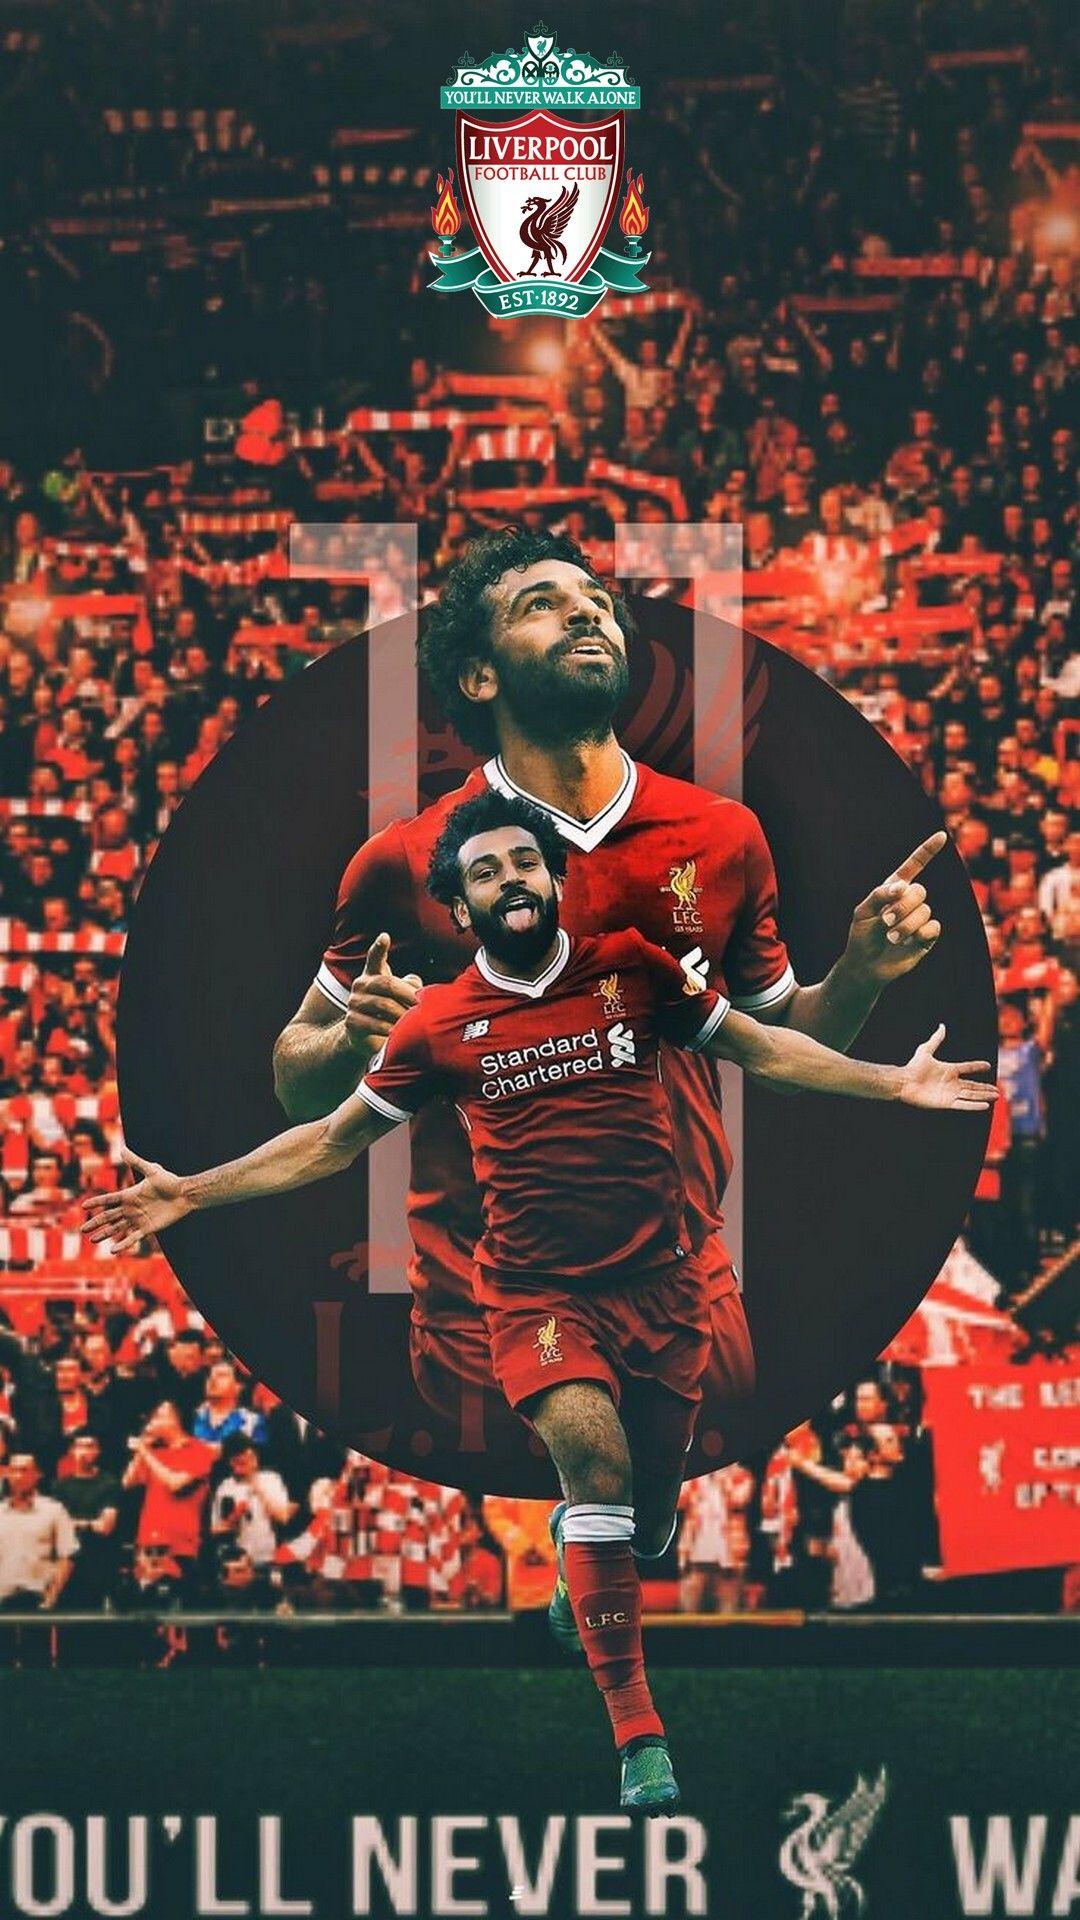 Liverpool Mohamed Salah Wallpaper Android. iPhoneWallpaper. Salah